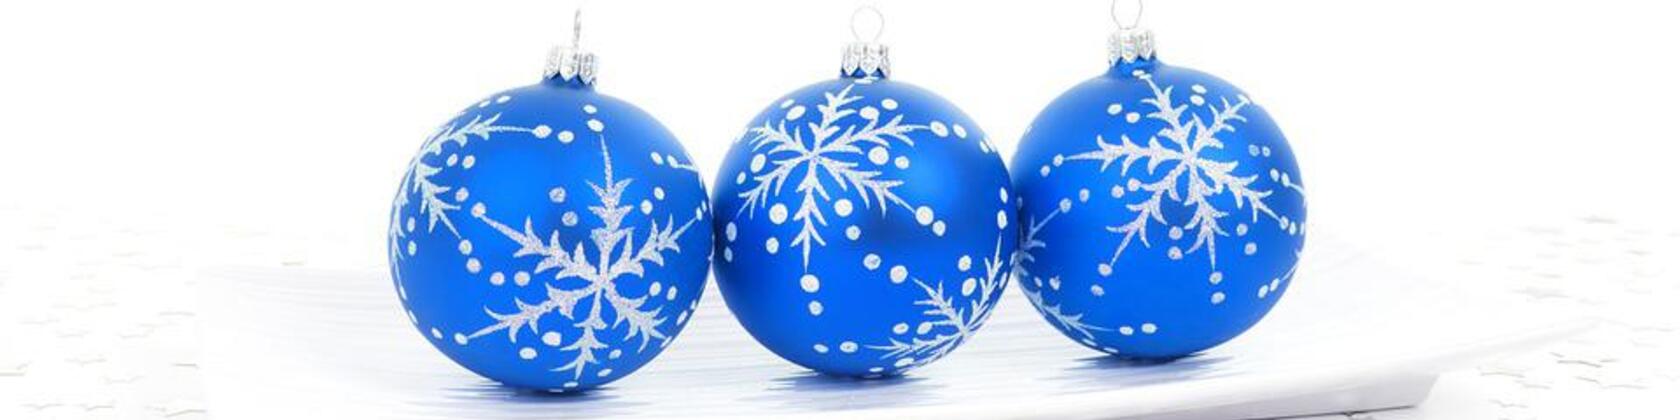 3 blauwe kerstballen op een rij